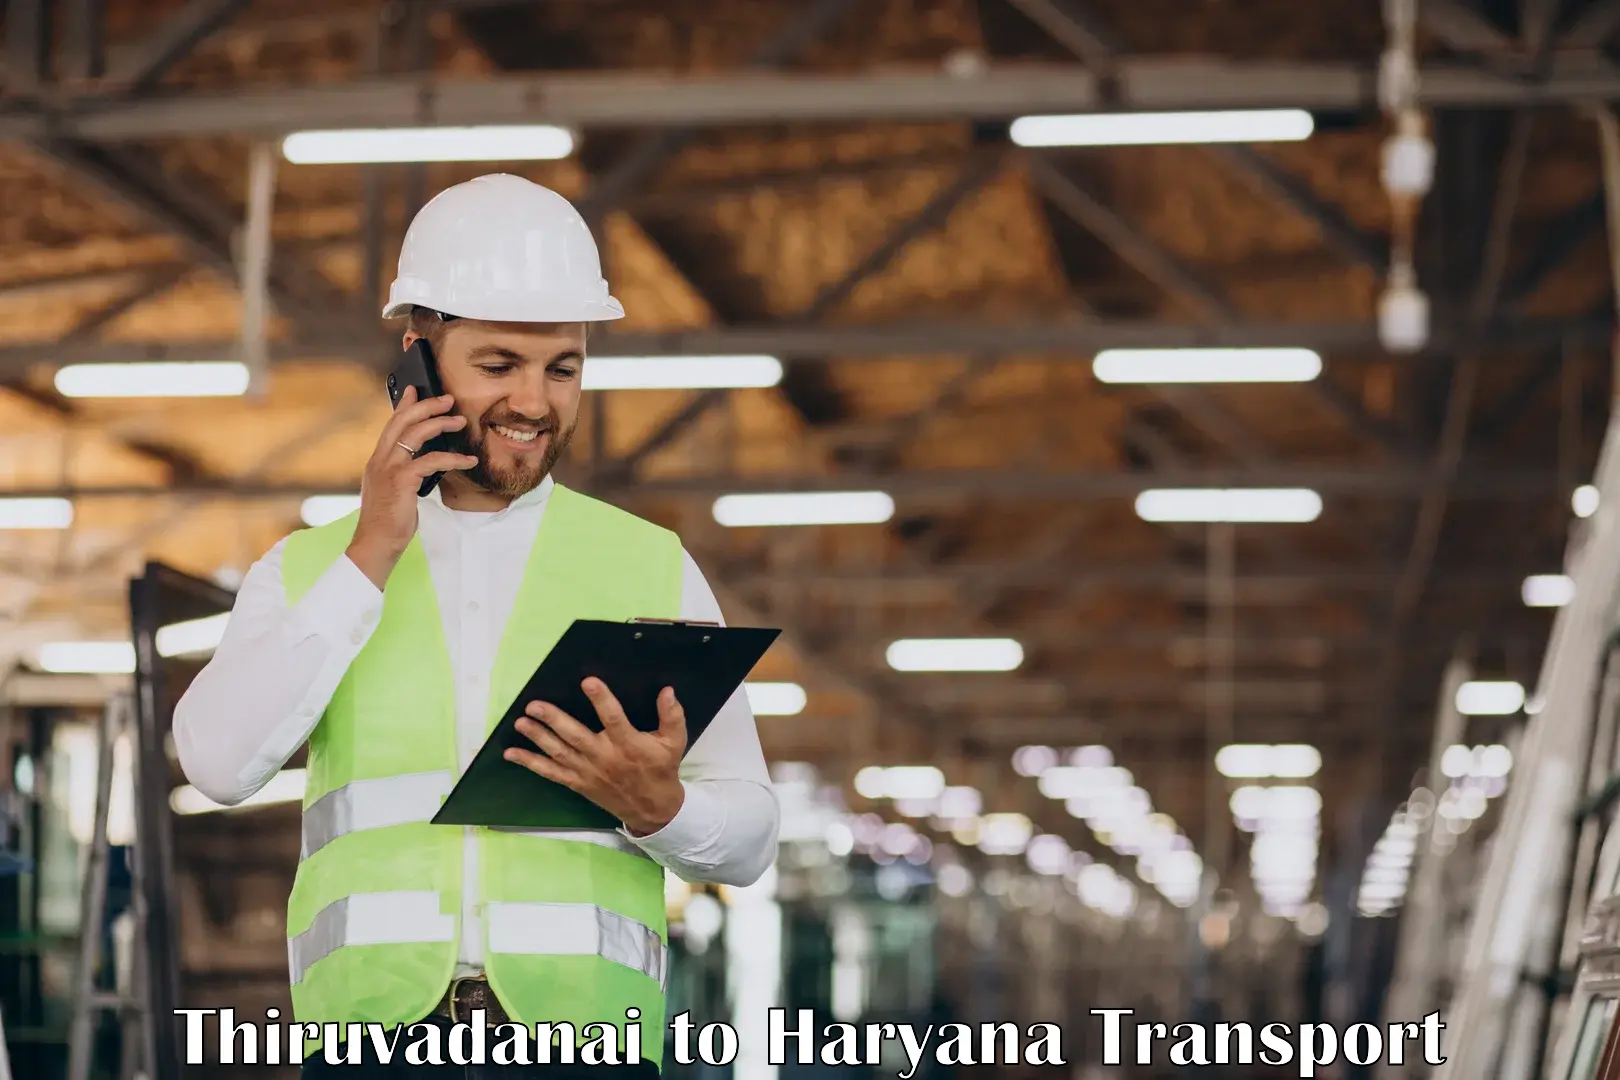 Online transport service Thiruvadanai to Nuh